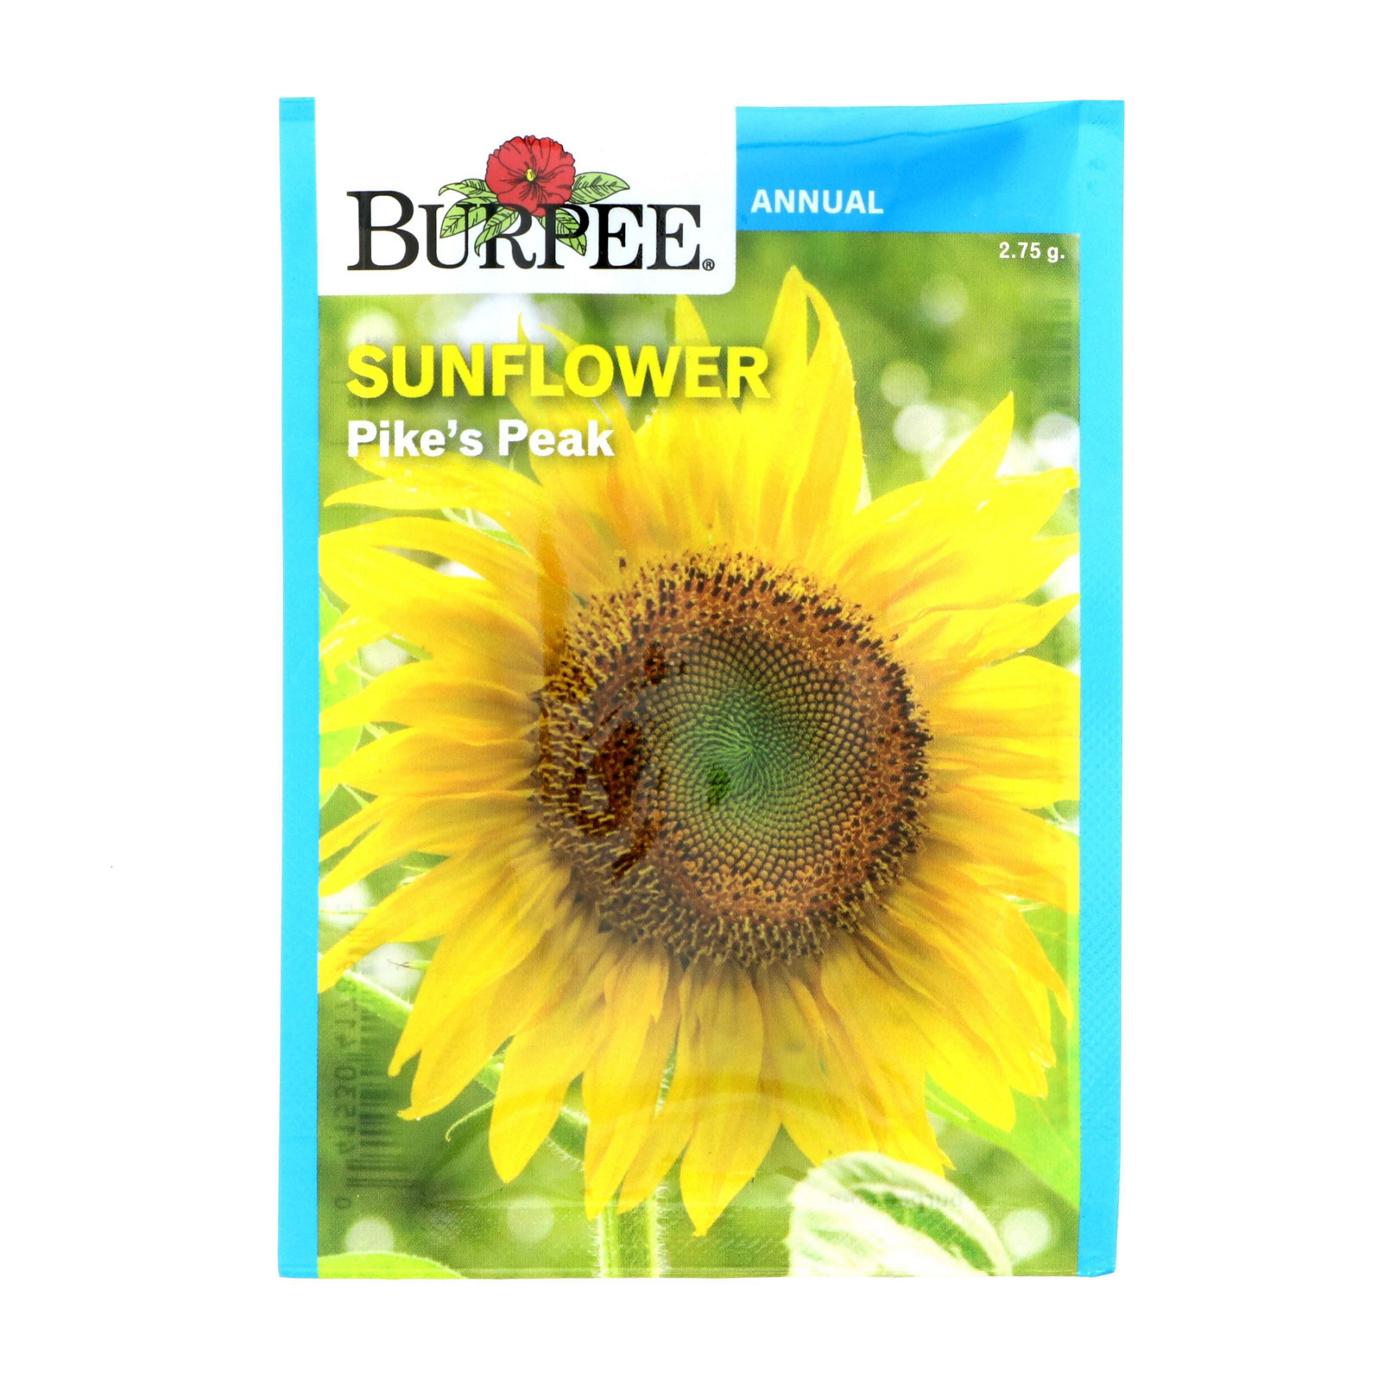 Burpee Pike's Peak Sunflower Annual Flower Seeds; image 1 of 2